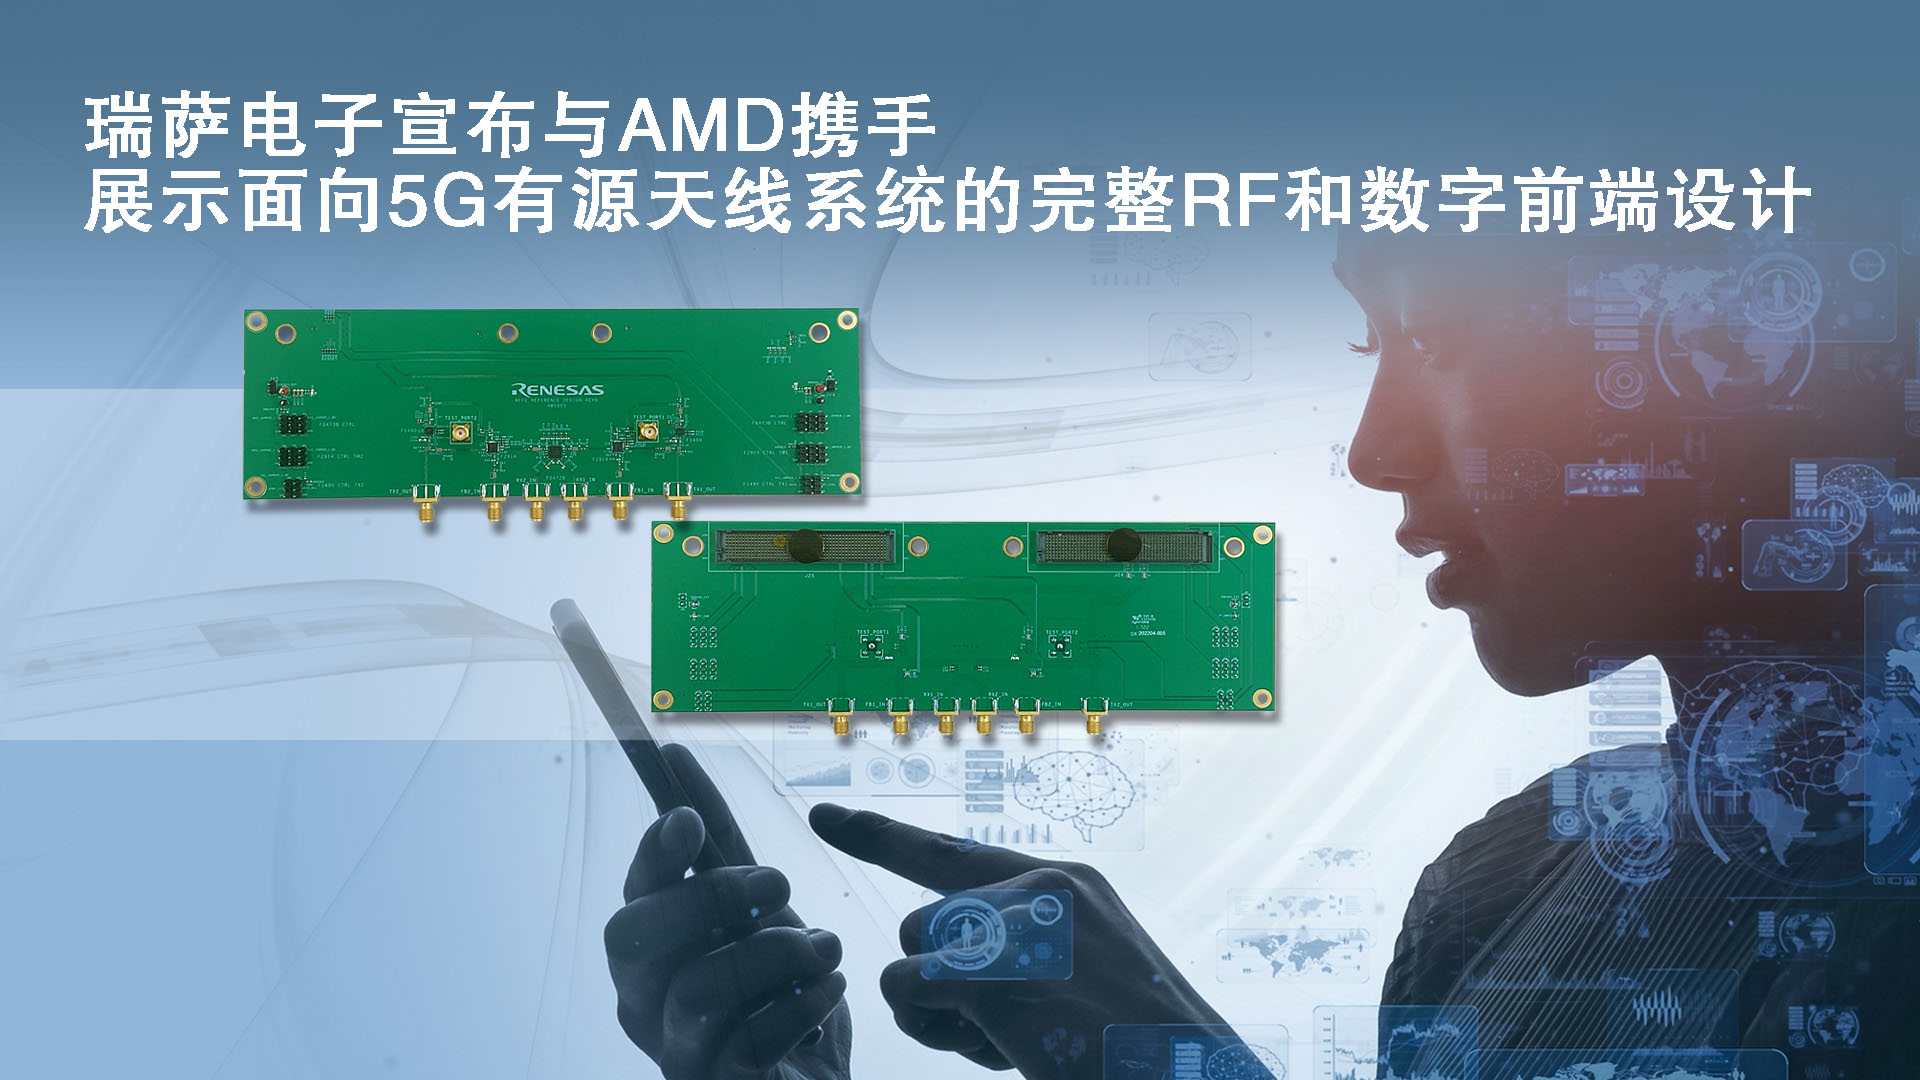 瑞萨电子宣布与AMD携手展示面向5G有源天线系统的完整RF和数字前端设计.jpg